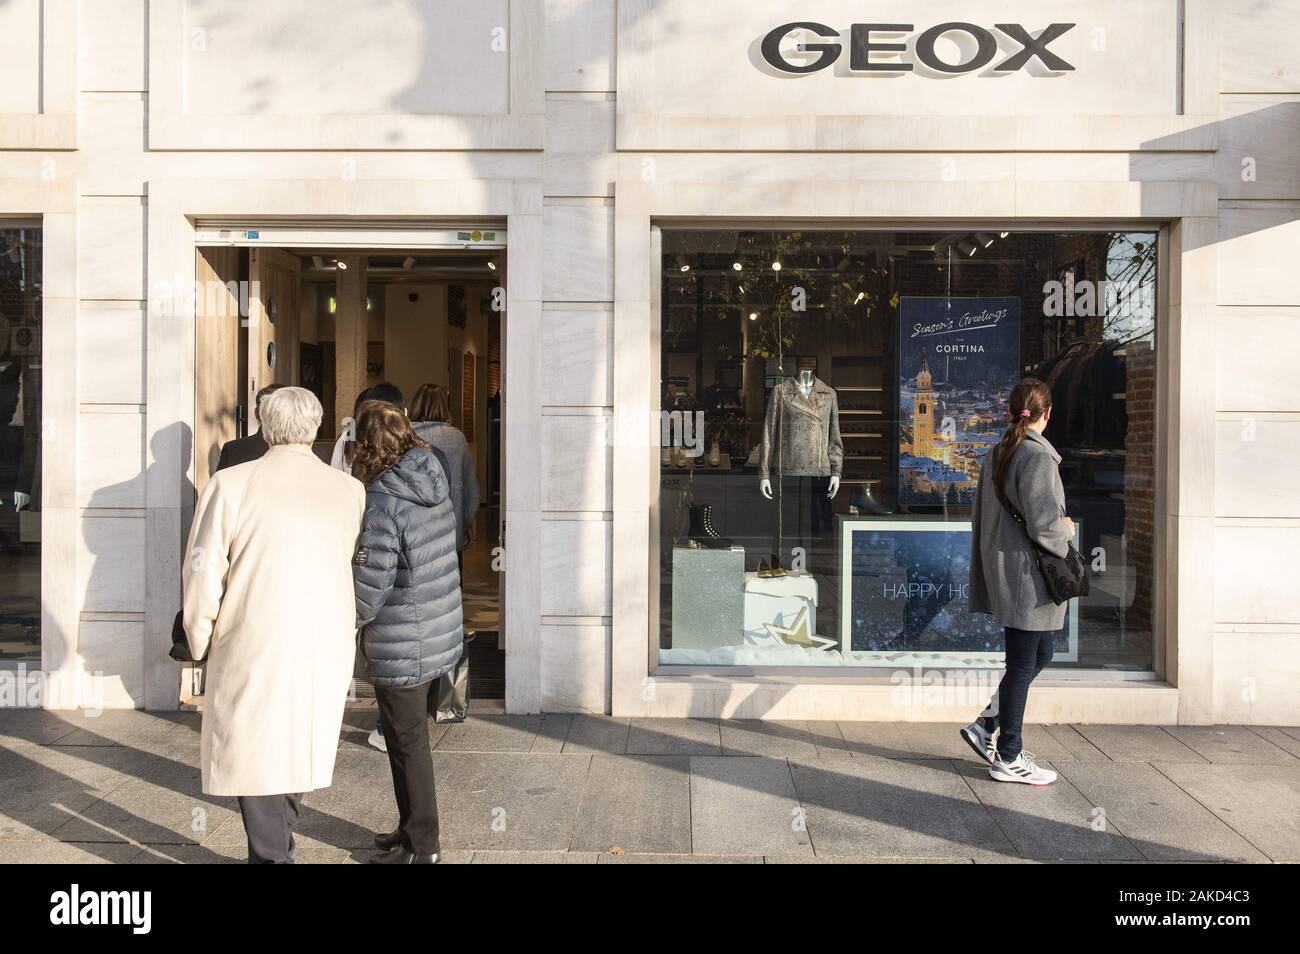 España. 31 dic, 2019. La marca de calzado Geox tienda visto en España. Crédito: Budrul Chukrut SOPA/Images/Zuma Live News Fotografía de stock - Alamy